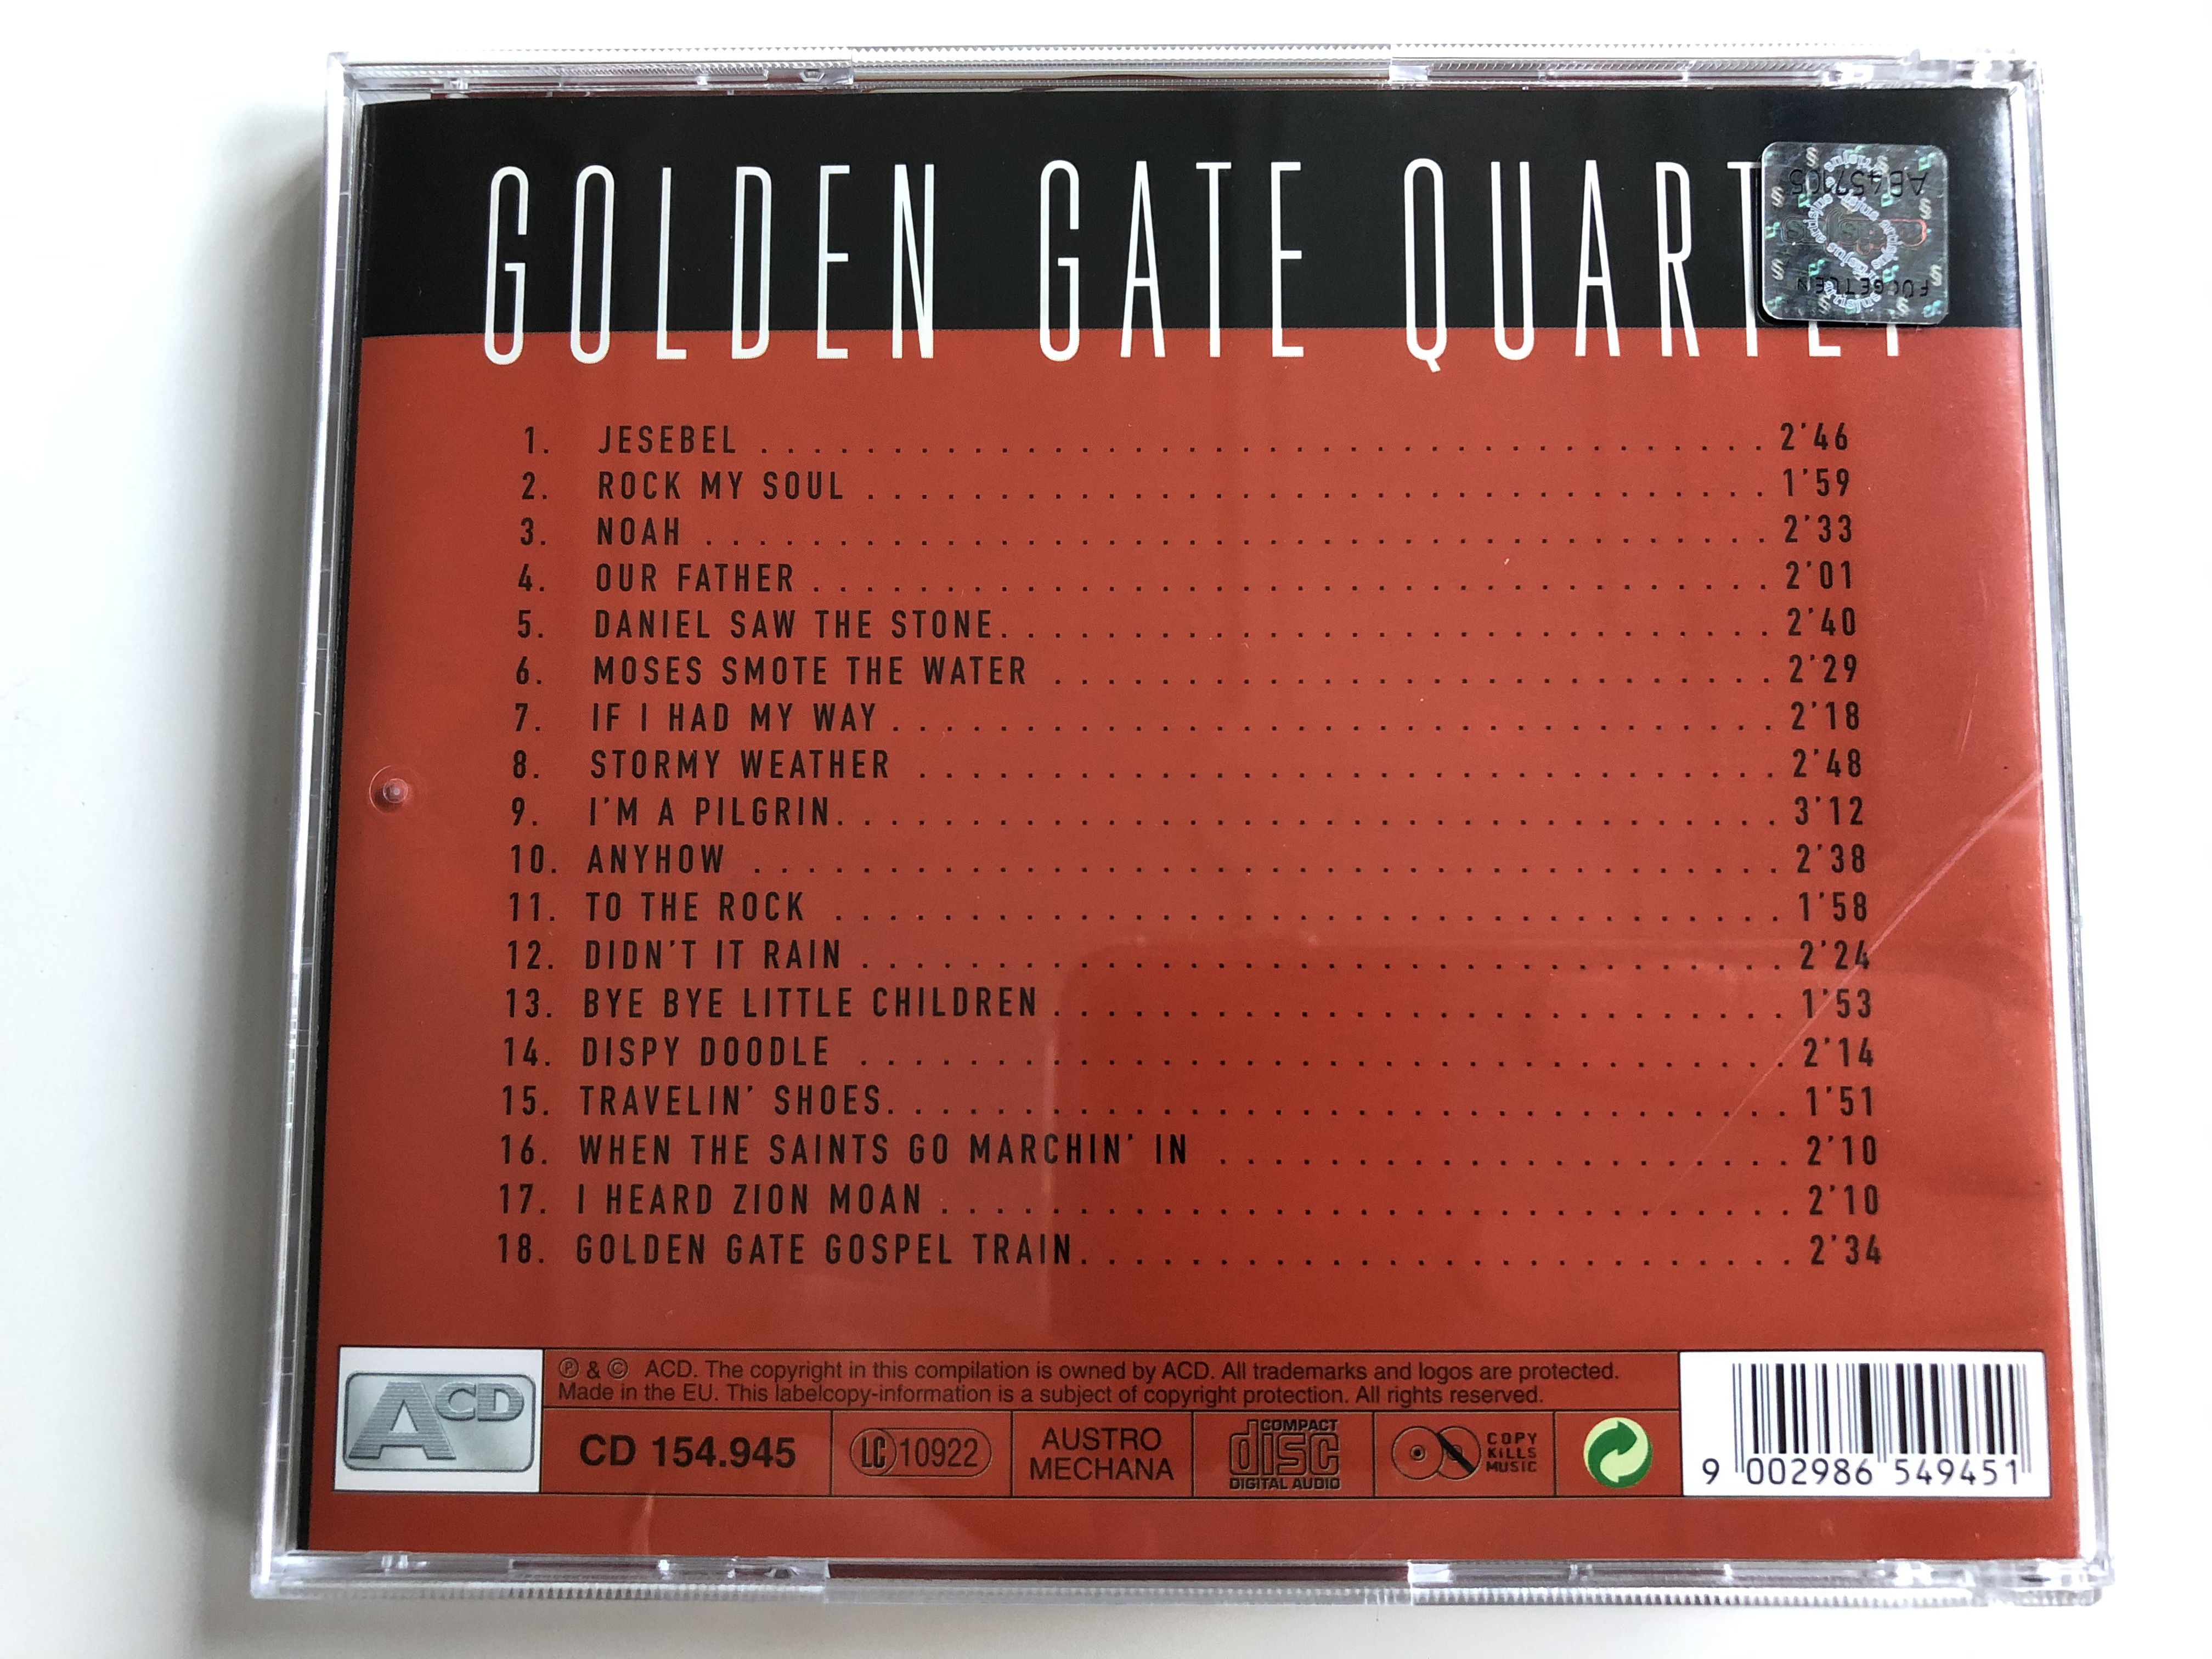 jesebel-golden-gate-quartet-acd-audio-cd-cd-154-2-.jpg